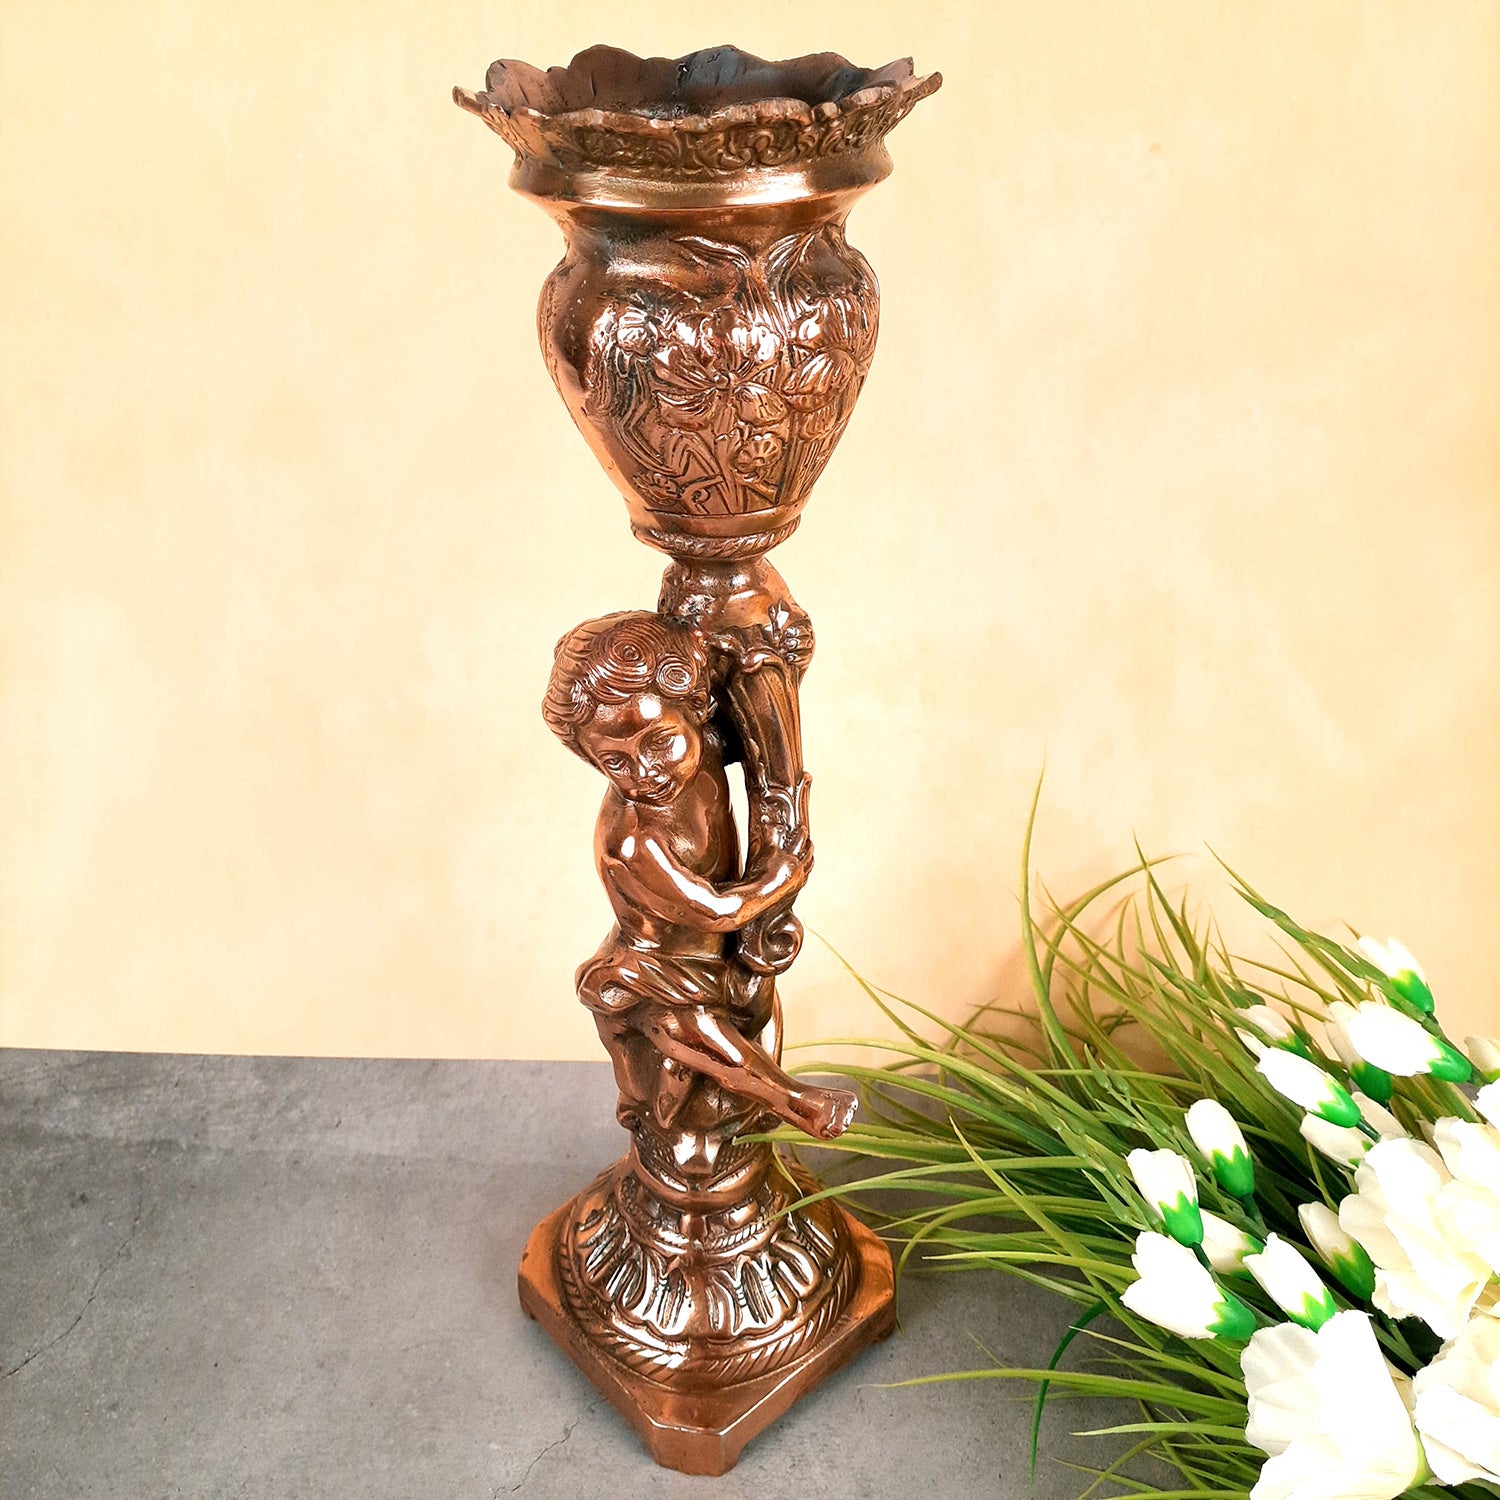 Antique Flowe Pot Big | Decorative Indoor Flower Pot - For Living Room, Home, Corner, Entrance Decor - 20 Inch - Apkamart